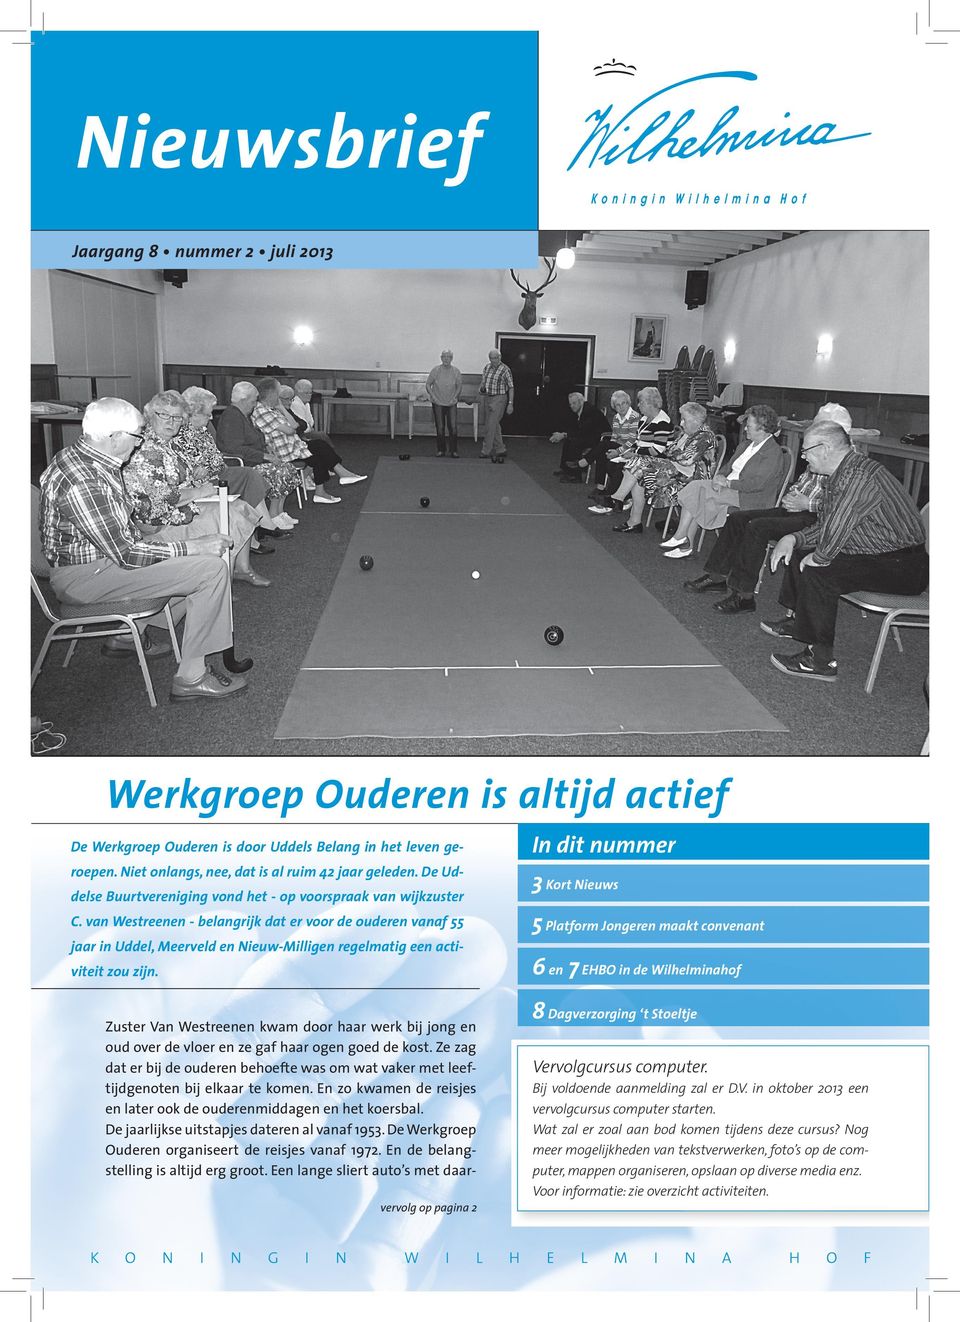 van Westreenen - belangrijk dat er voor de ouderen vanaf 55 jaar in Uddel, Meerveld en Nieuw-Milligen regelmatig een activiteit zou zijn.